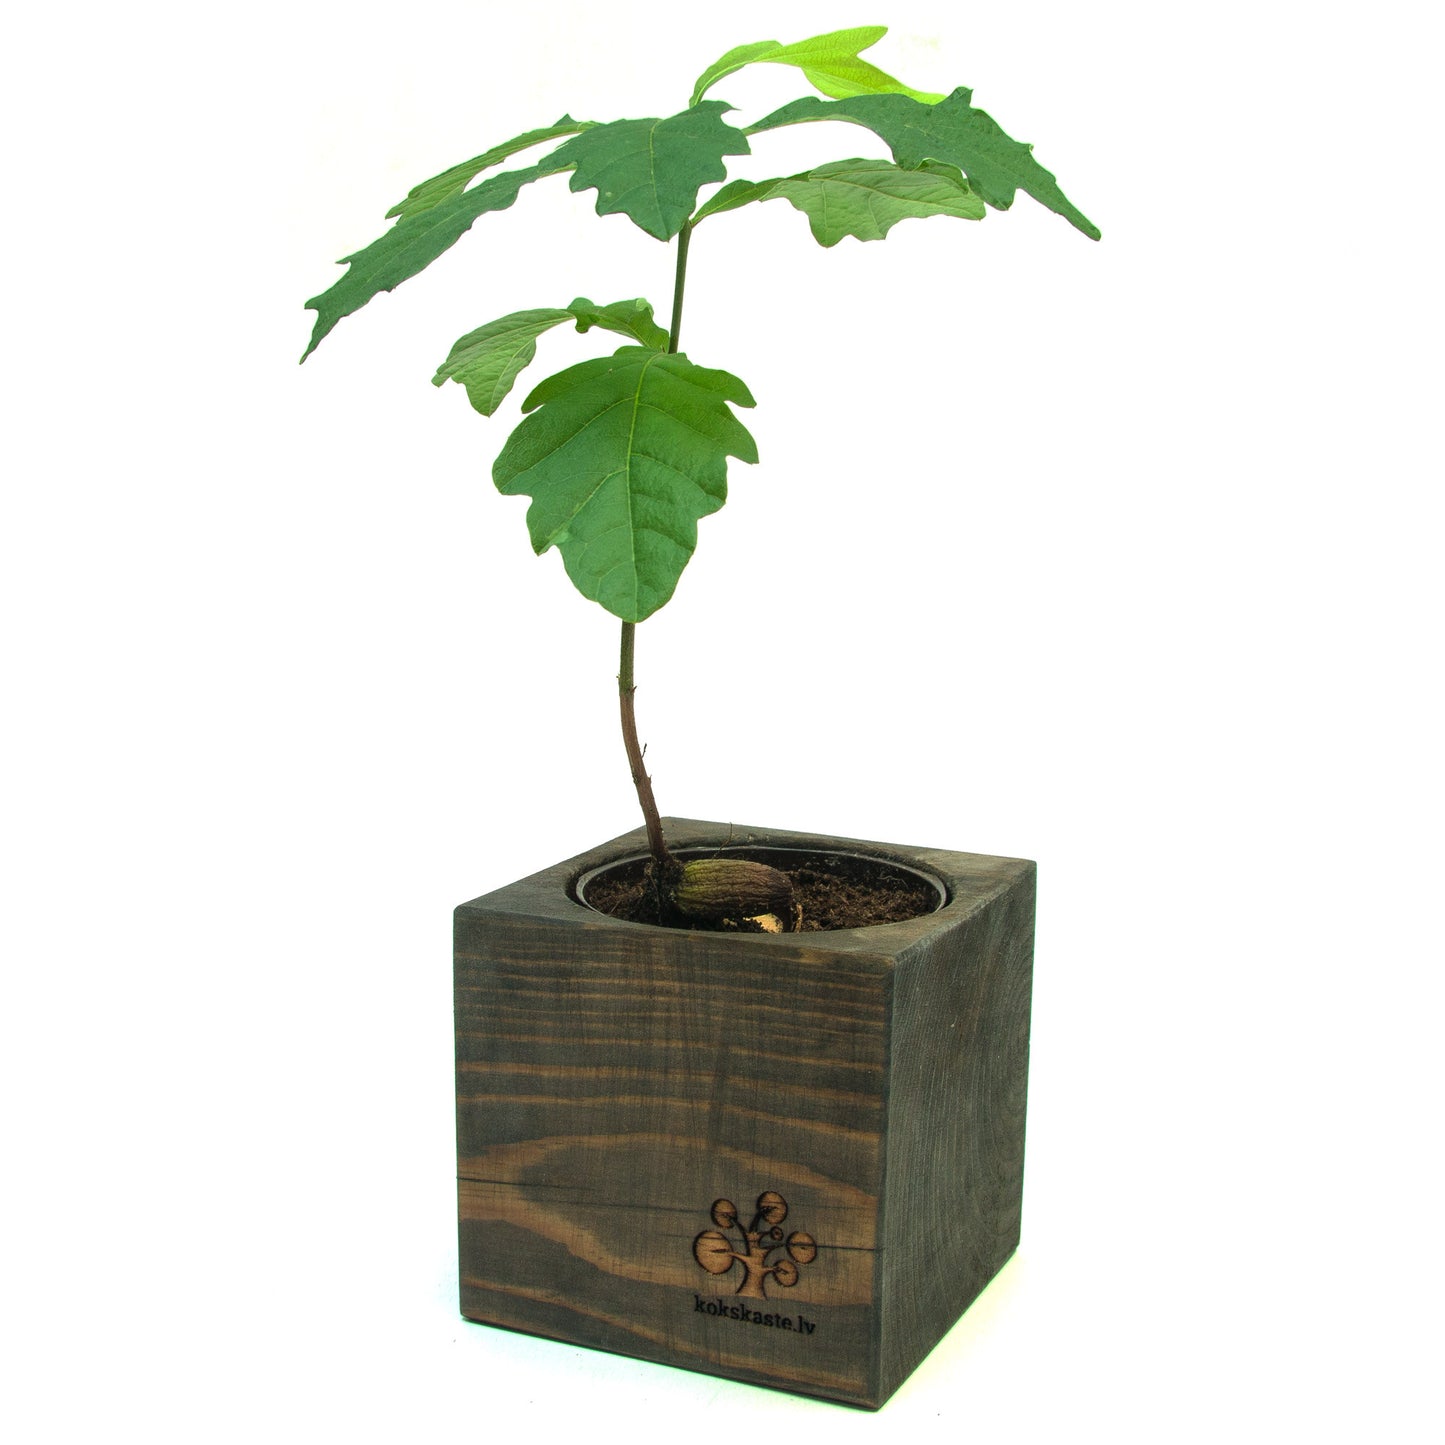 Grown oak tree in a wooden pot